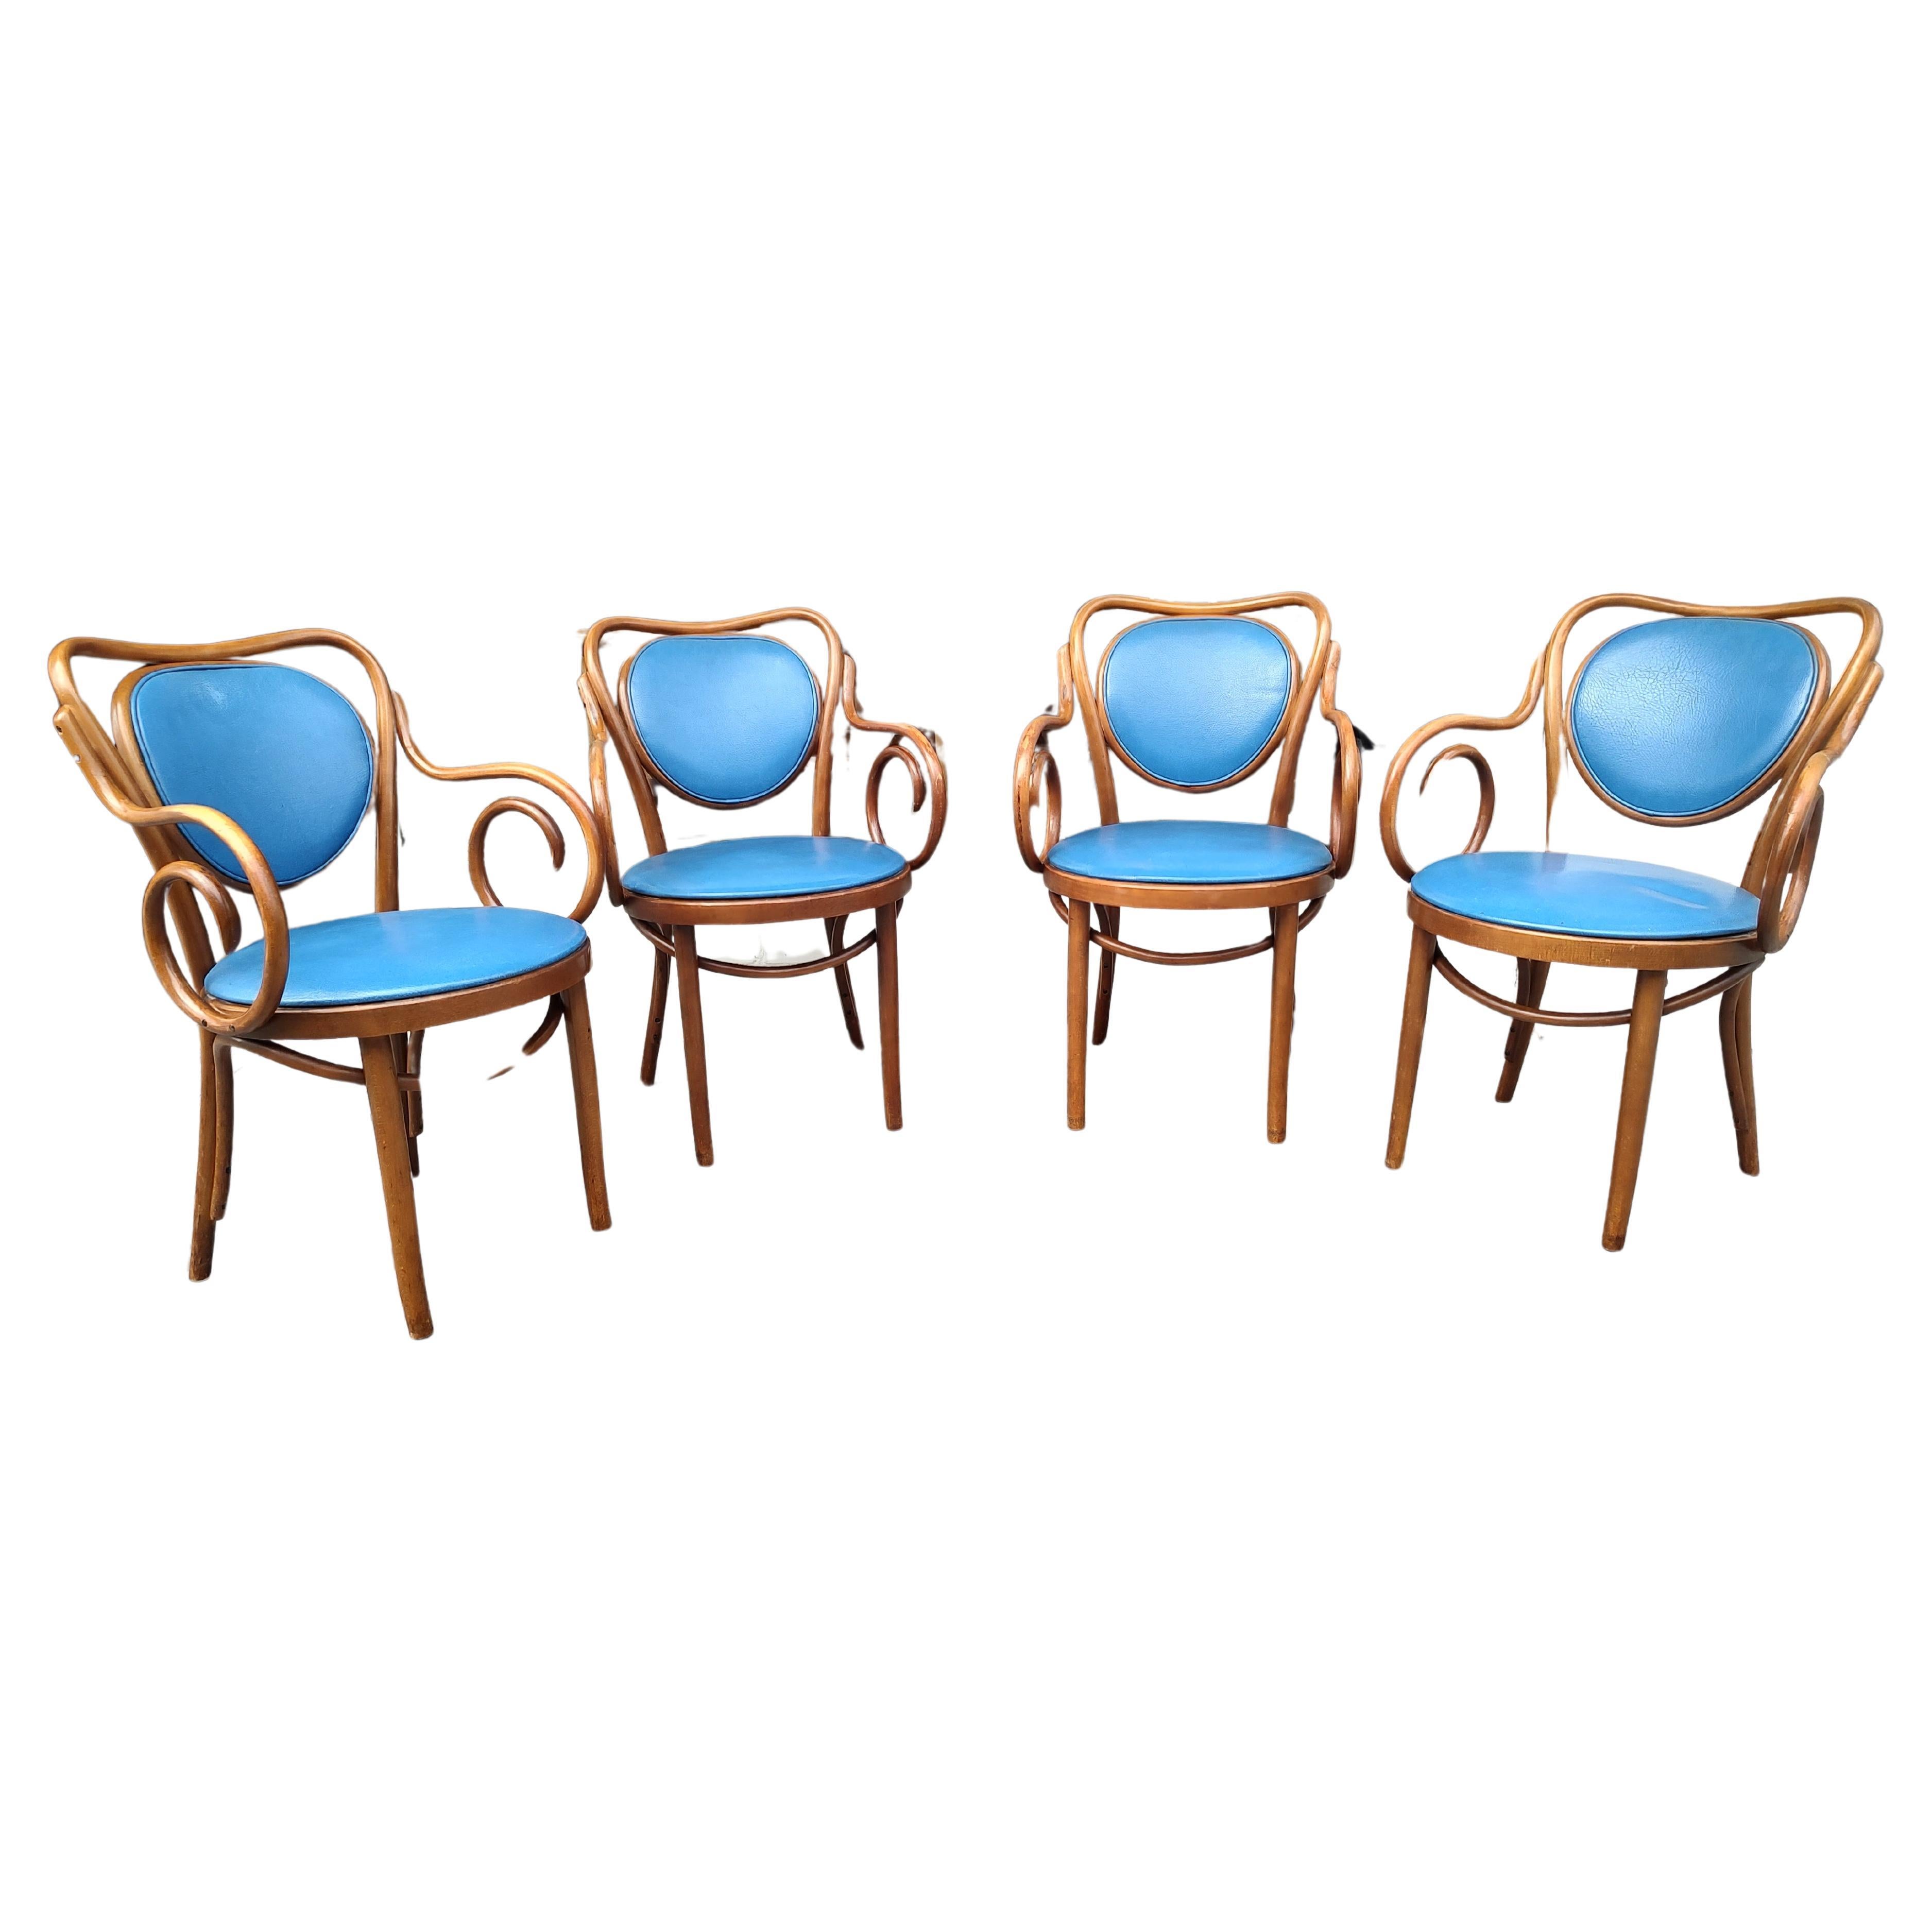 Fabelhafter Satz von 4 gepolsterten Thonet Style Sesseln aus Bugholz. In ausgezeichnetem Vintage-Zustand mit minimalen Gebrauchsspuren. Blaues Vinyl ist eine leuchtende Farbe und kann leicht ausgetauscht werden. Auch die Stühle sind sehr bequem.